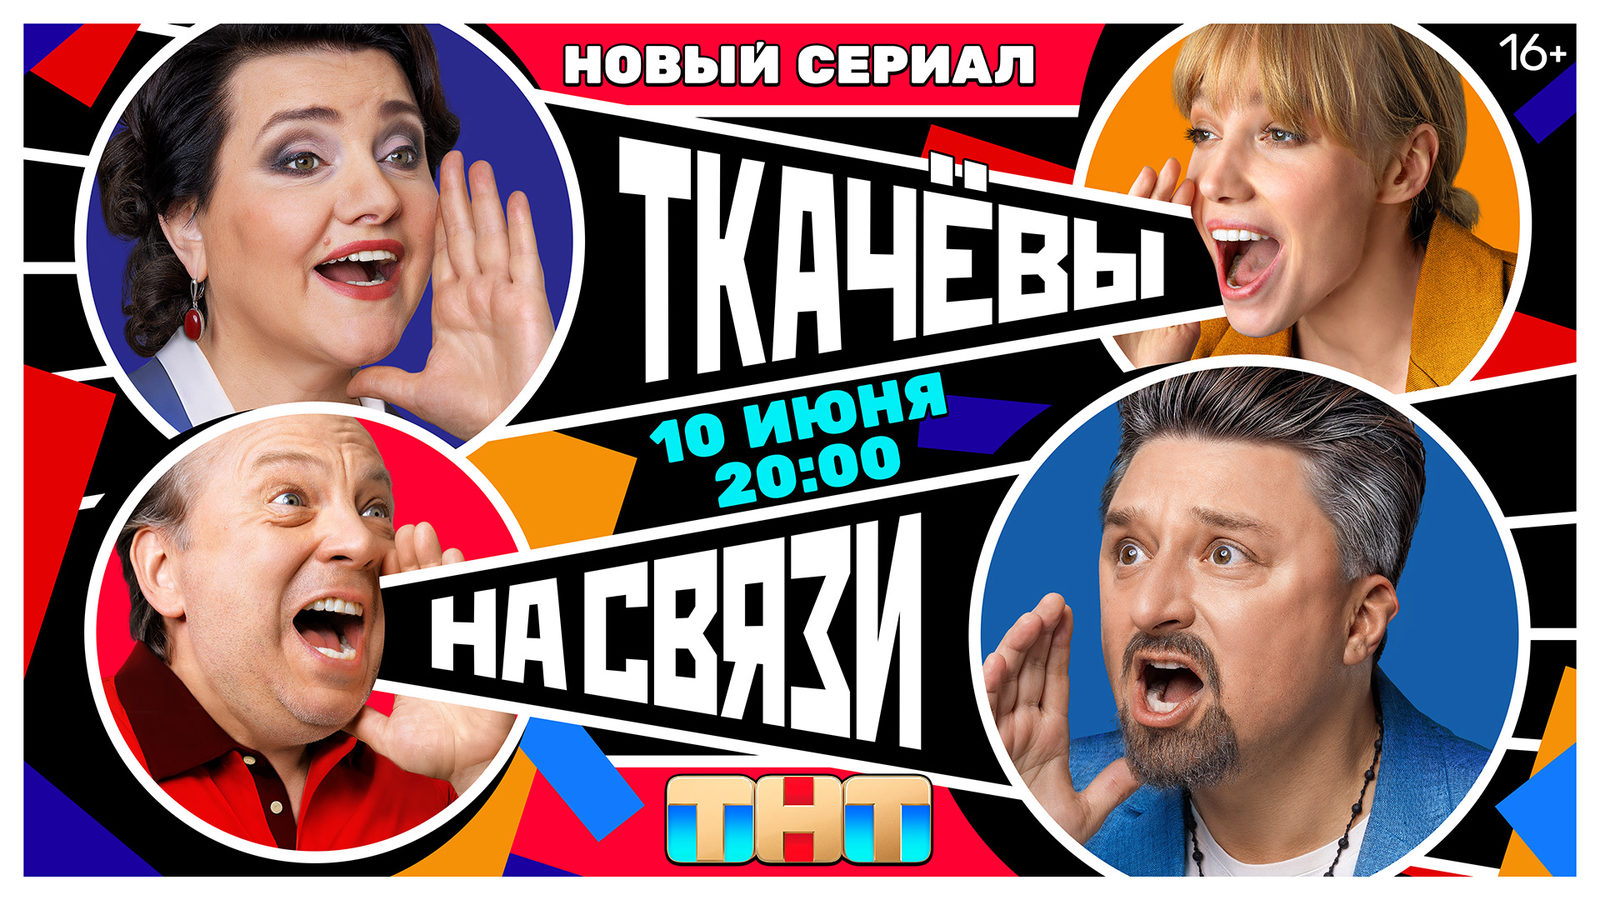 Премьера комедии «Ткачевы на связи» с Максимом Лагашкиным, Мариной Васильевой и Ингой Оболдиной состоится 10 июня